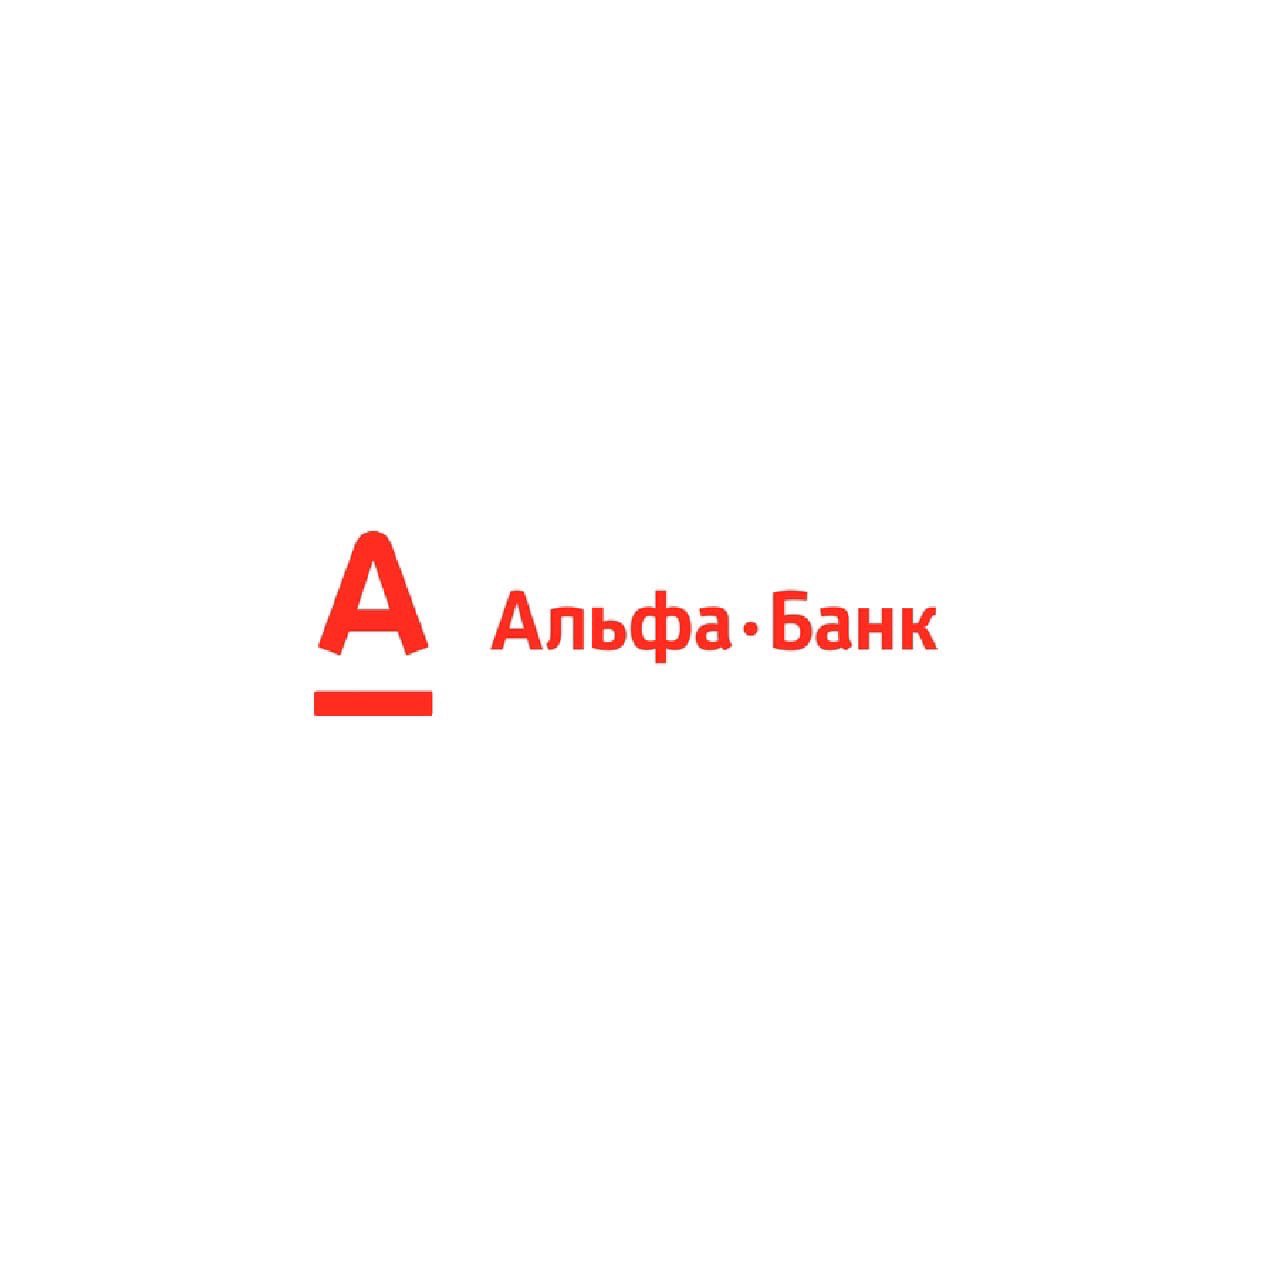 Альфа банк логотип новый